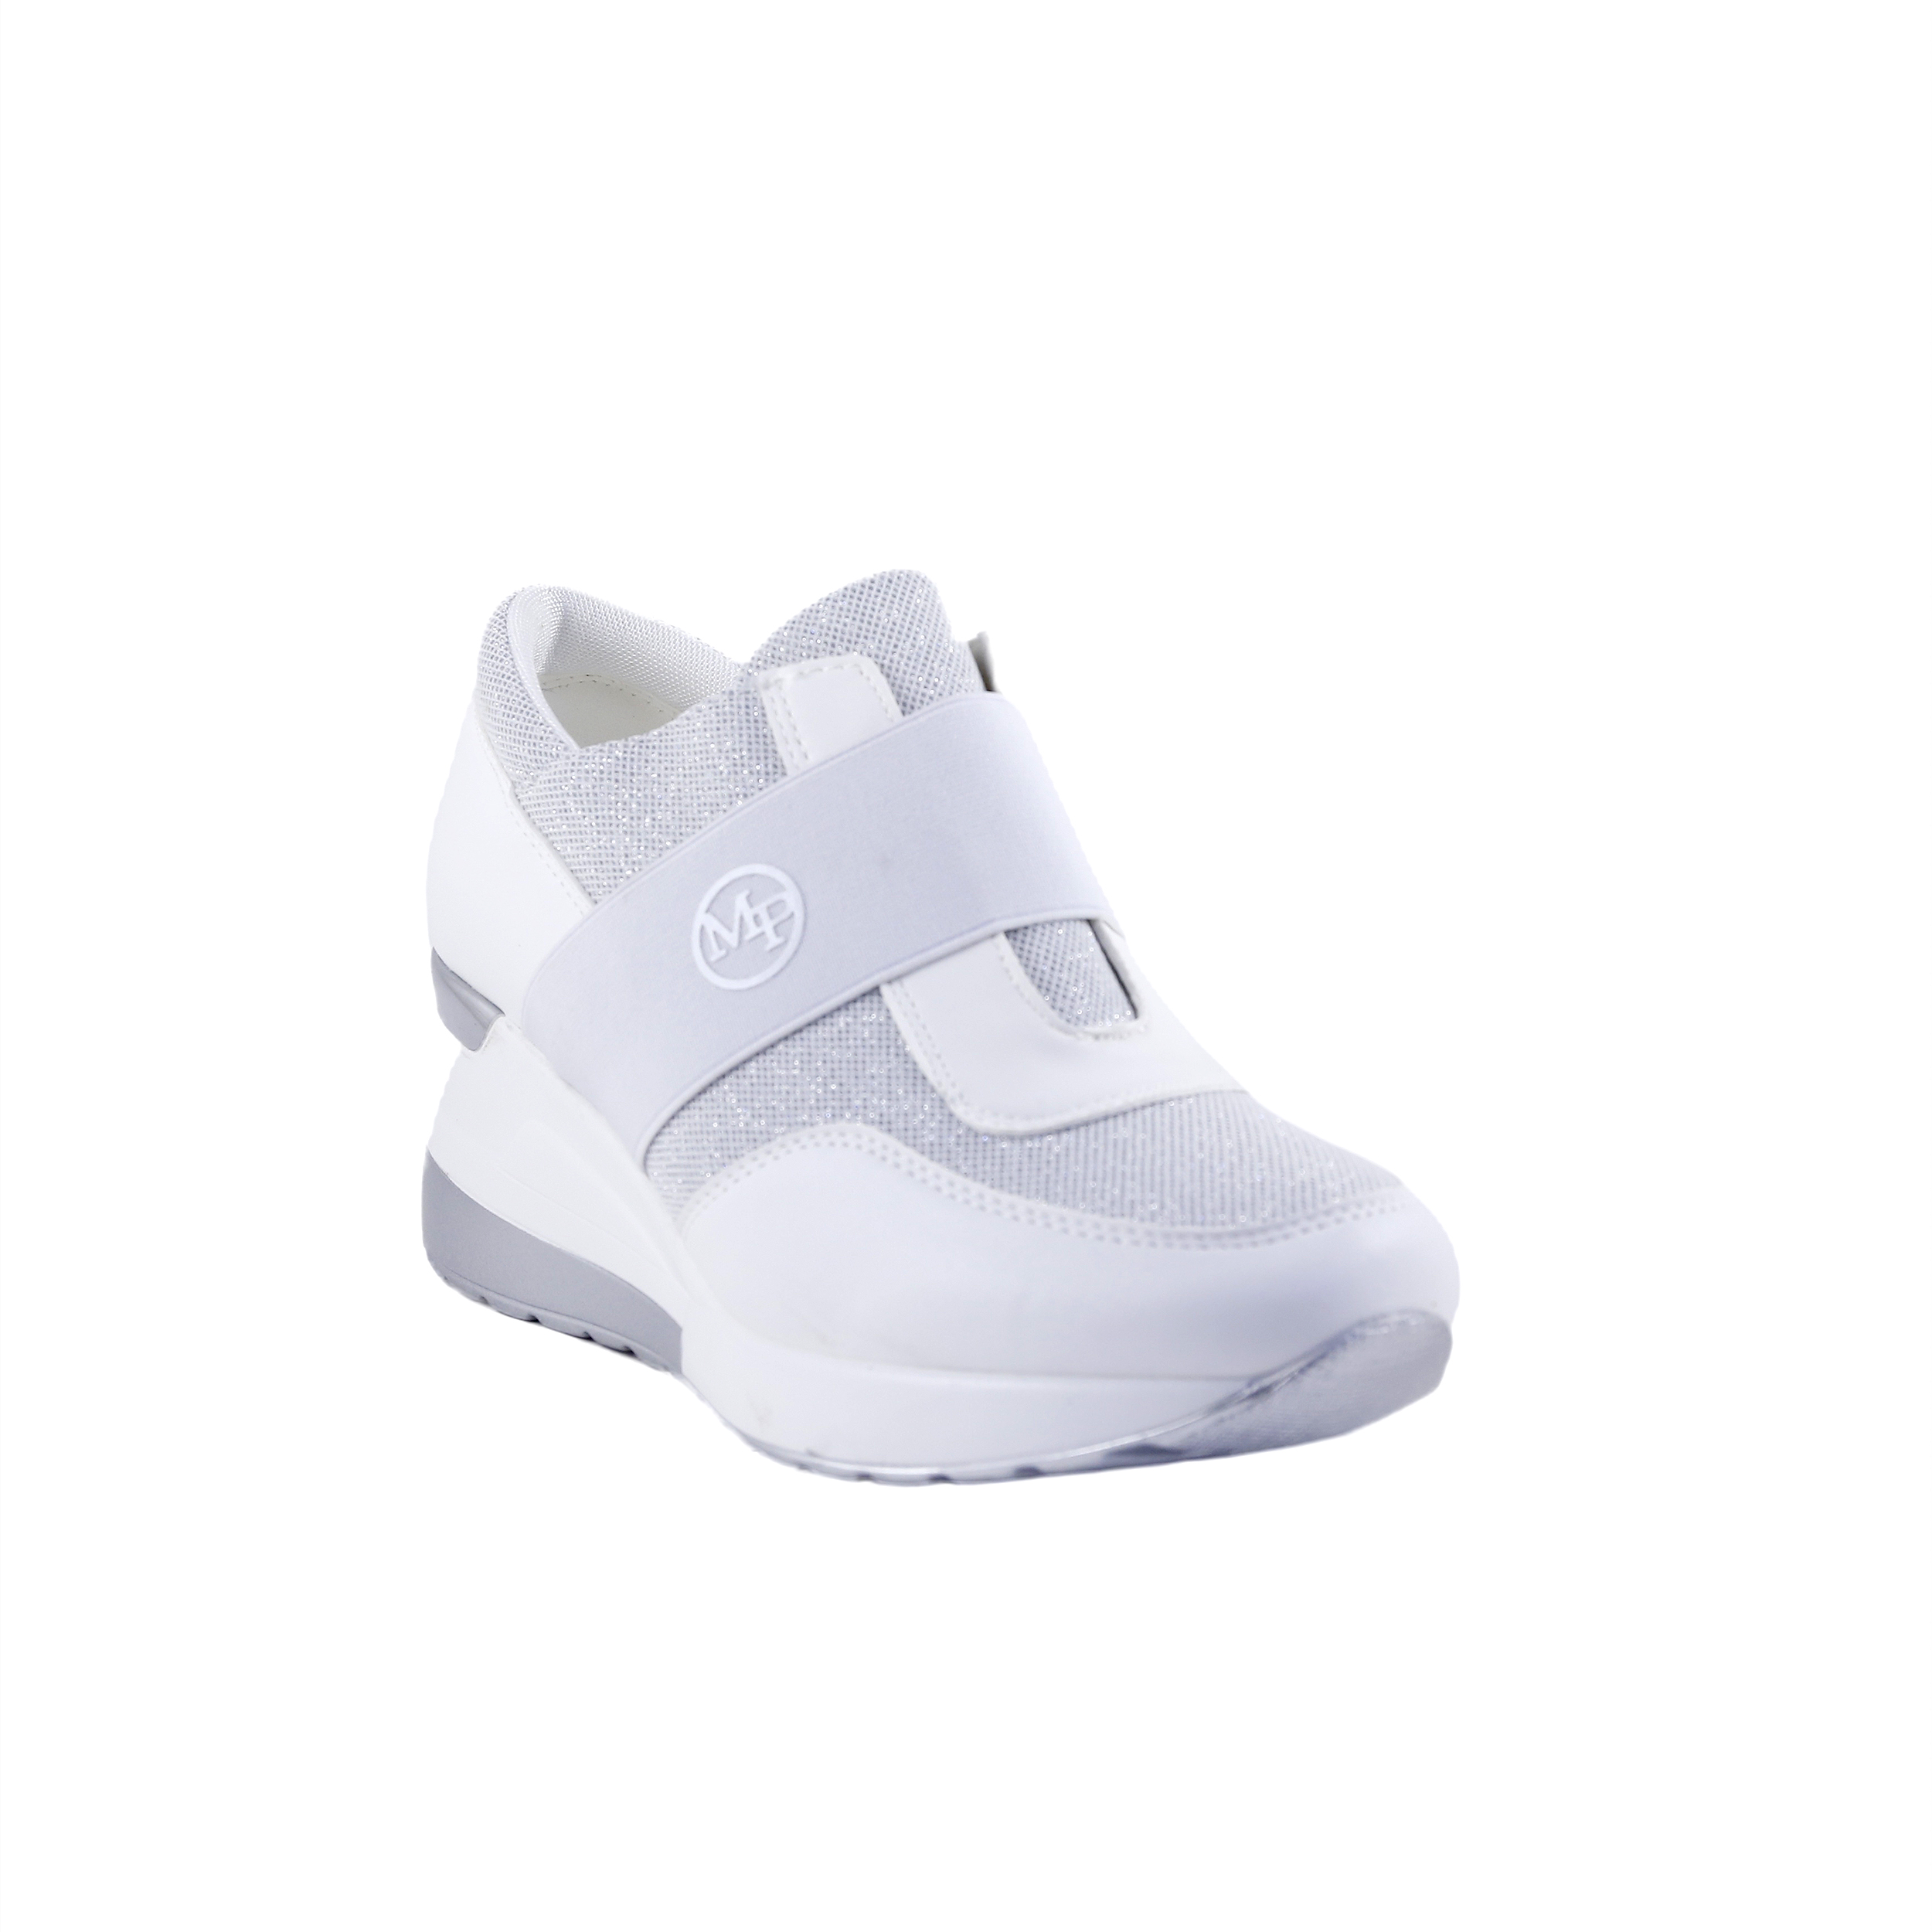 Γυναίκα Παπούτσια Casual-Sneakers Λευκά sneakers με λάστιχο